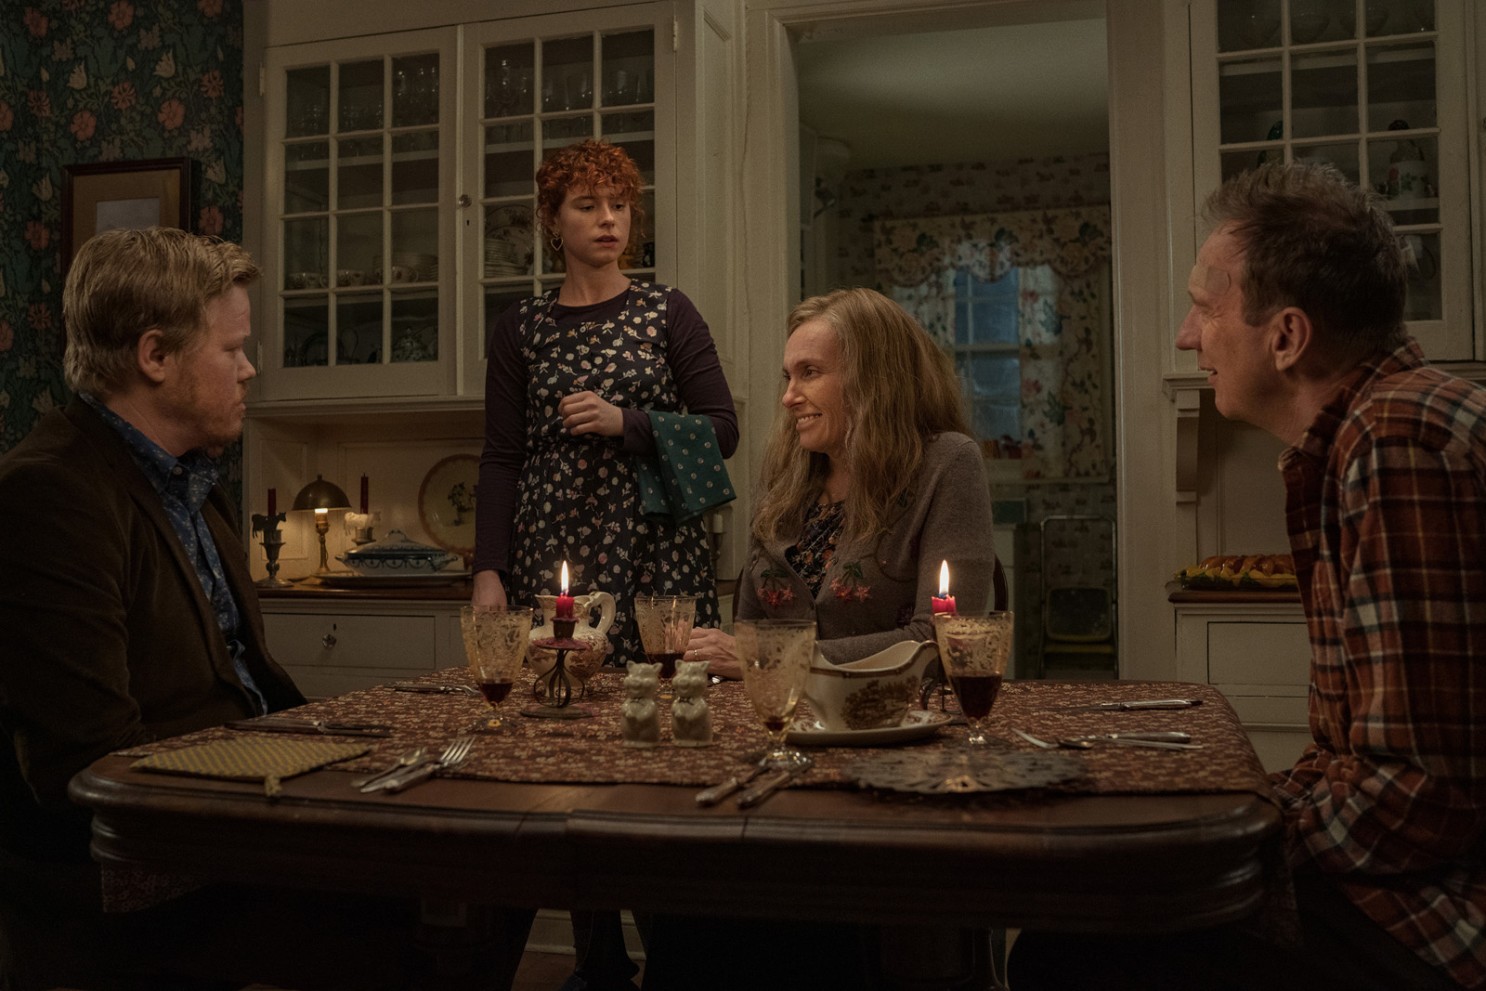 Três adultos estão sentados à mesa, enquanto a jovem mulher está de pé. O ambiente é mal iluminado e tem tons terrosos